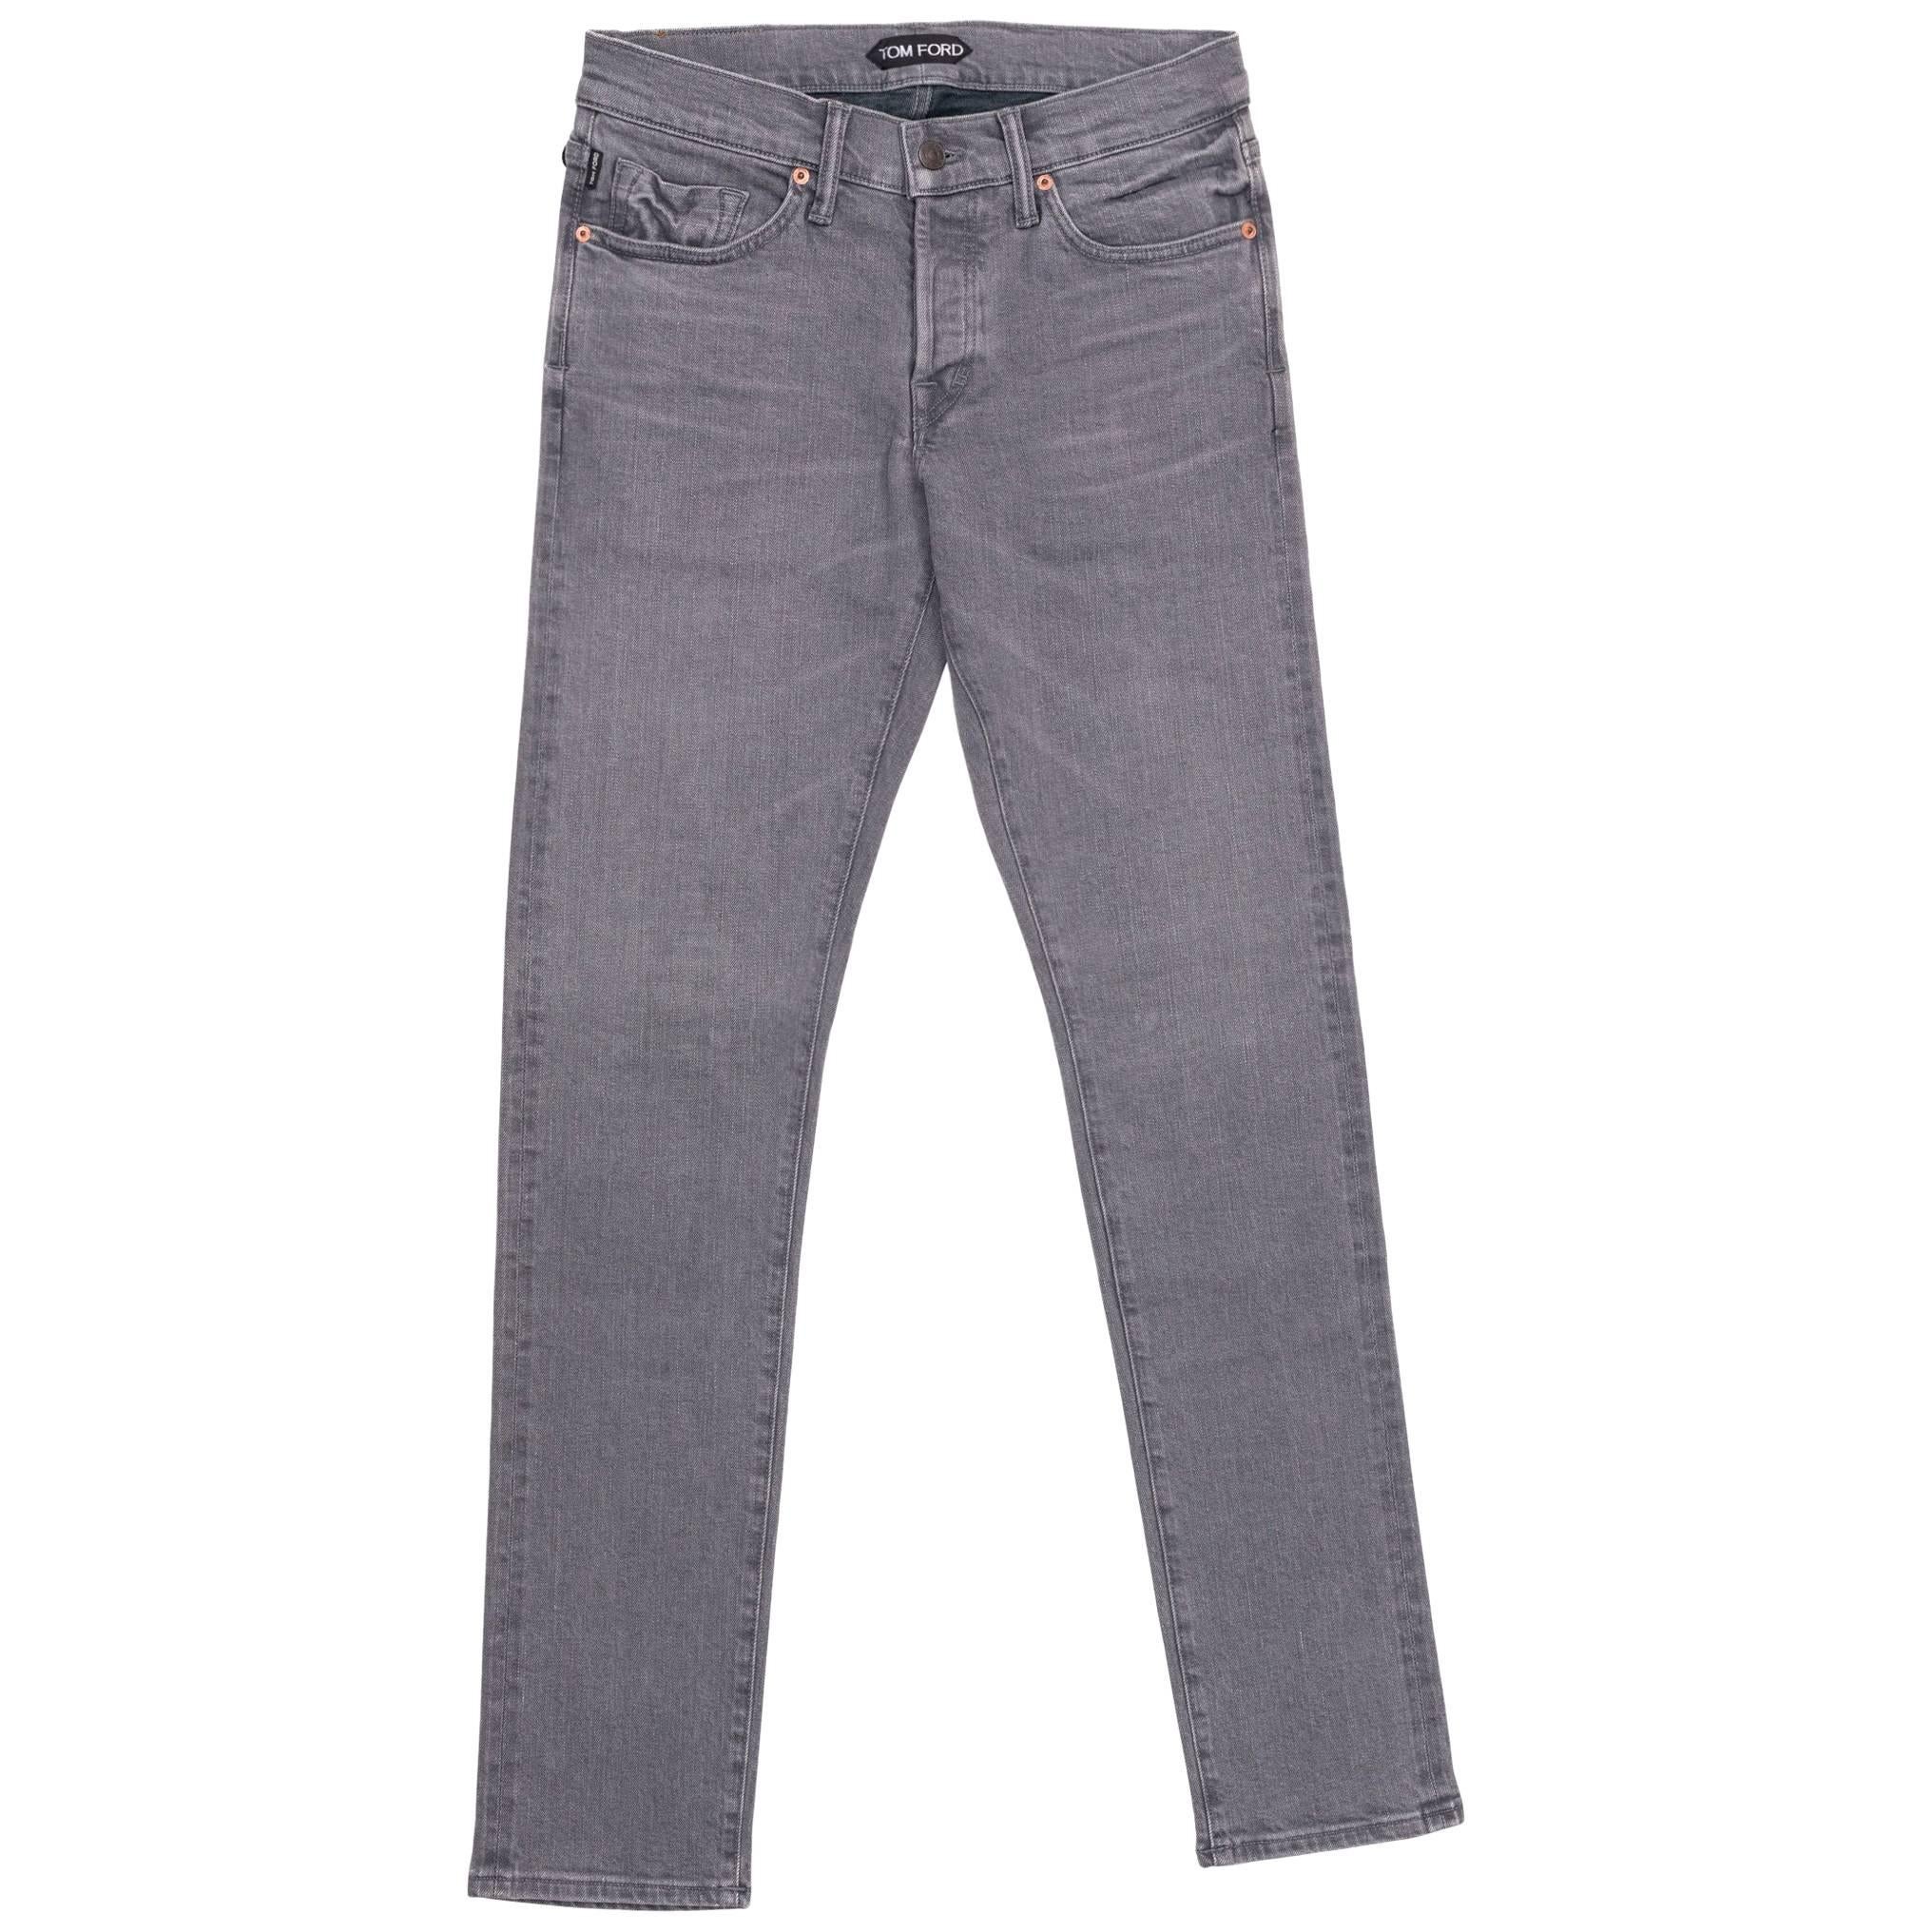 Tom Ford Selvedge Denim Jeans Light Grey Wash Size 31 Regular Fit Model For Sale